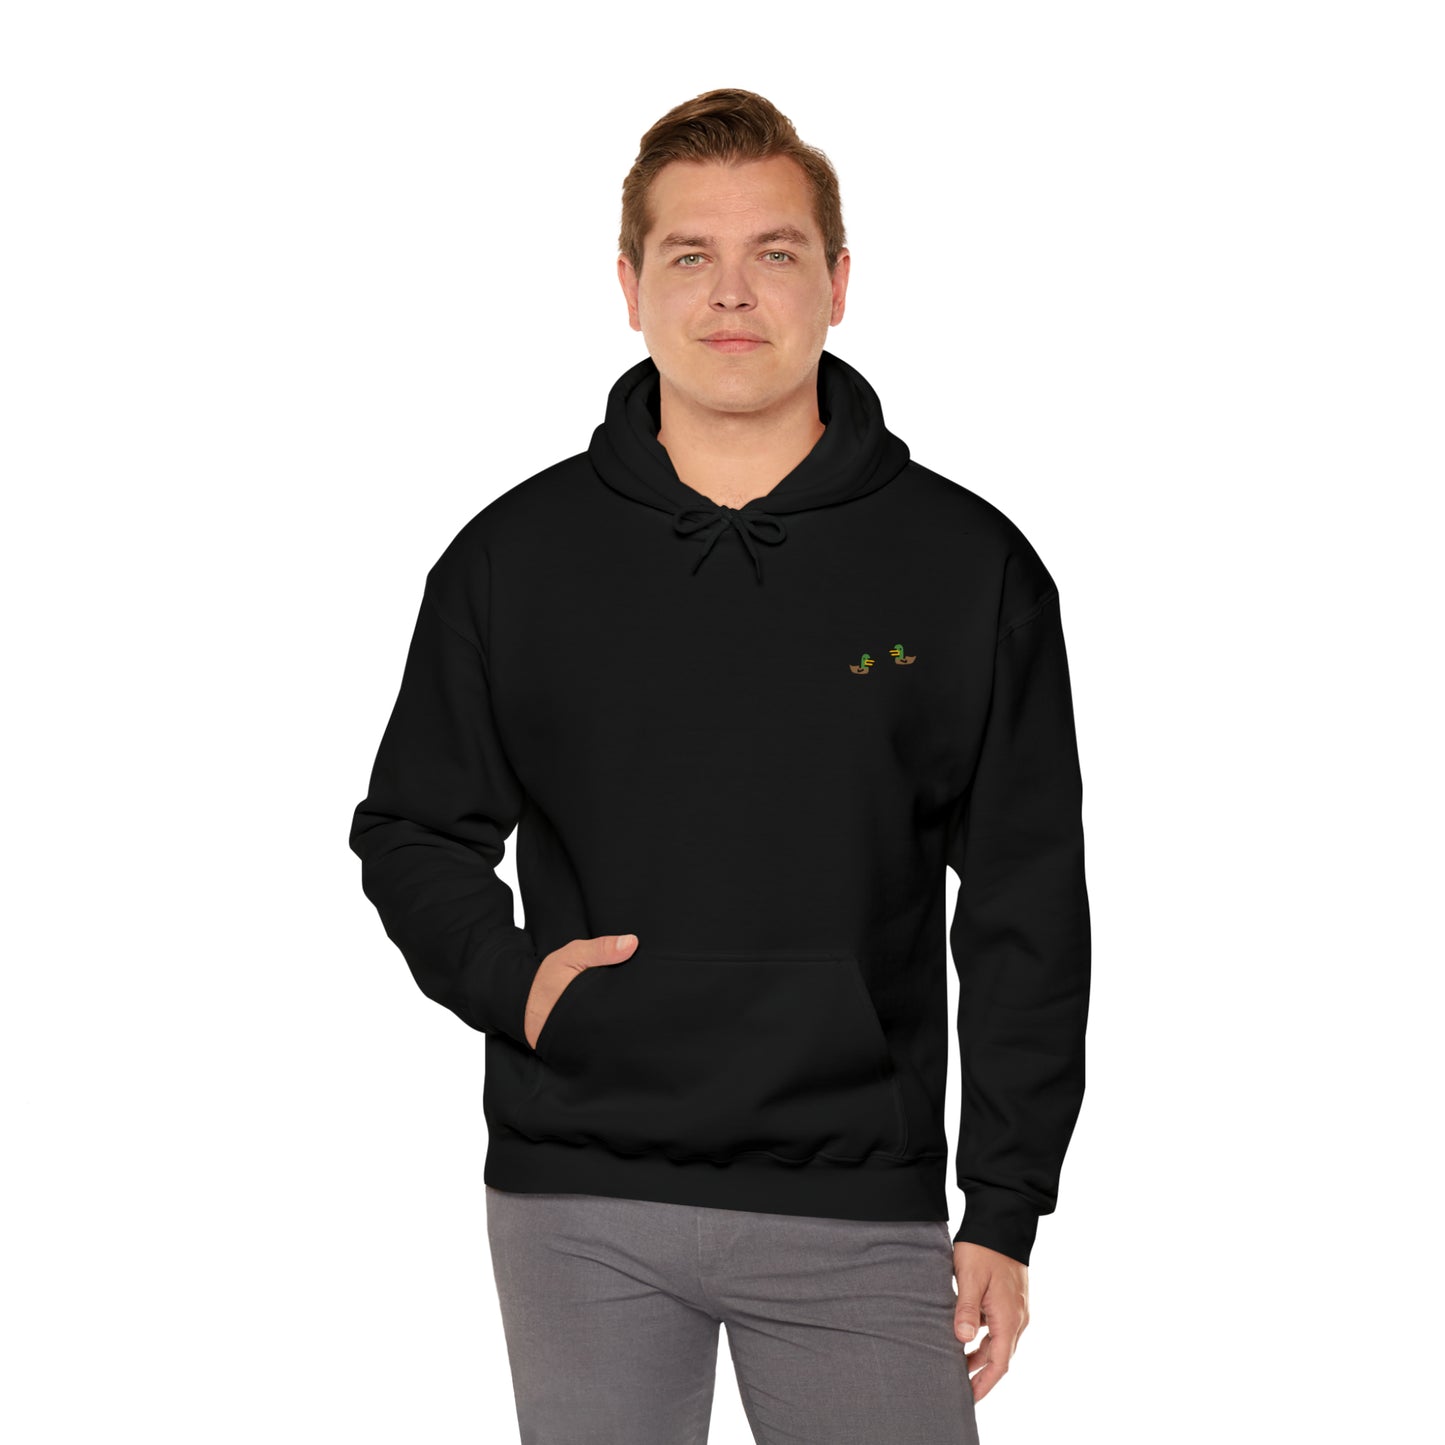 Twin Ducks - Adult Unisex Heavy Blend™ Hooded Sweatshirt